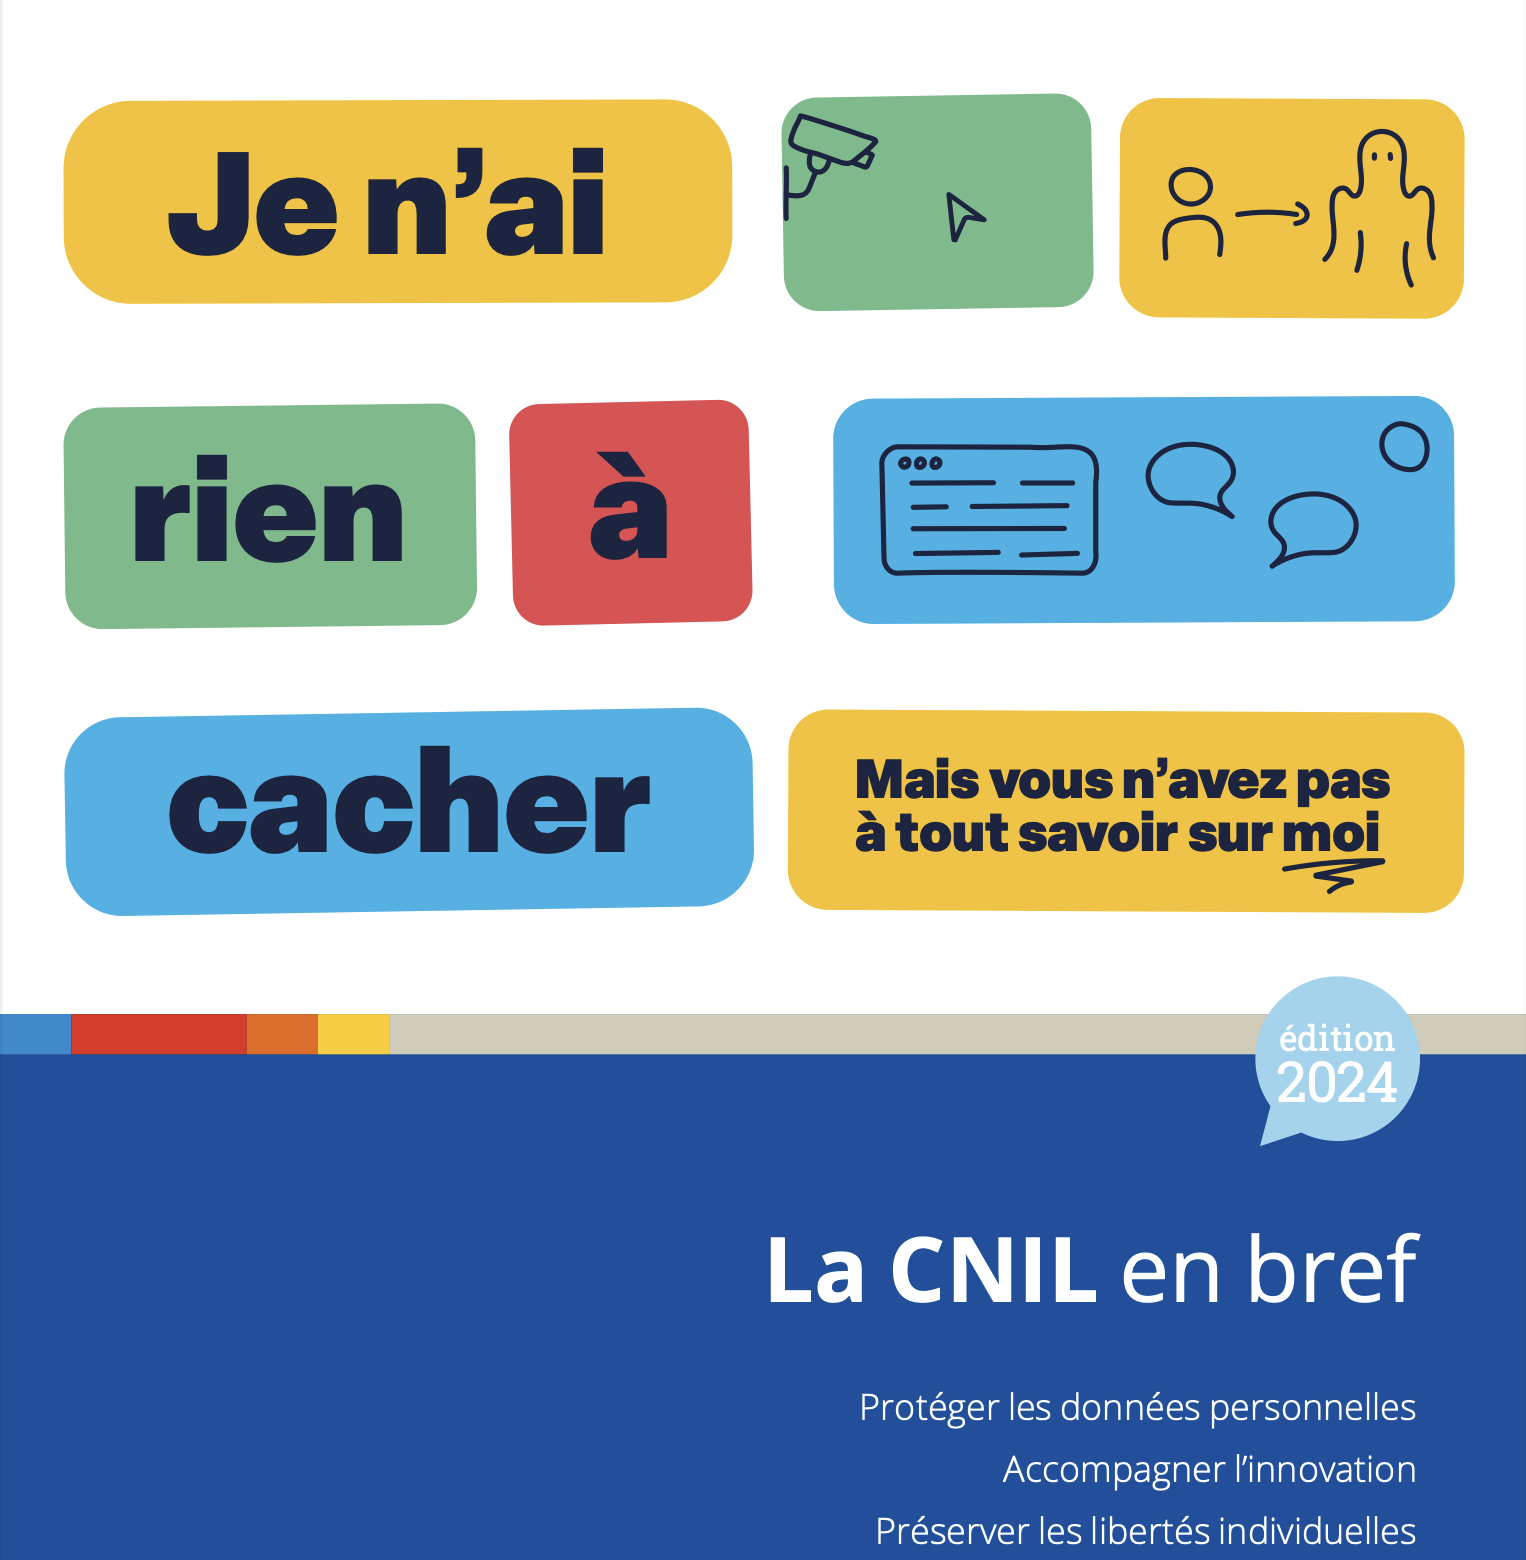 Le bilan 2023 de la CNIL en chiffres-clés